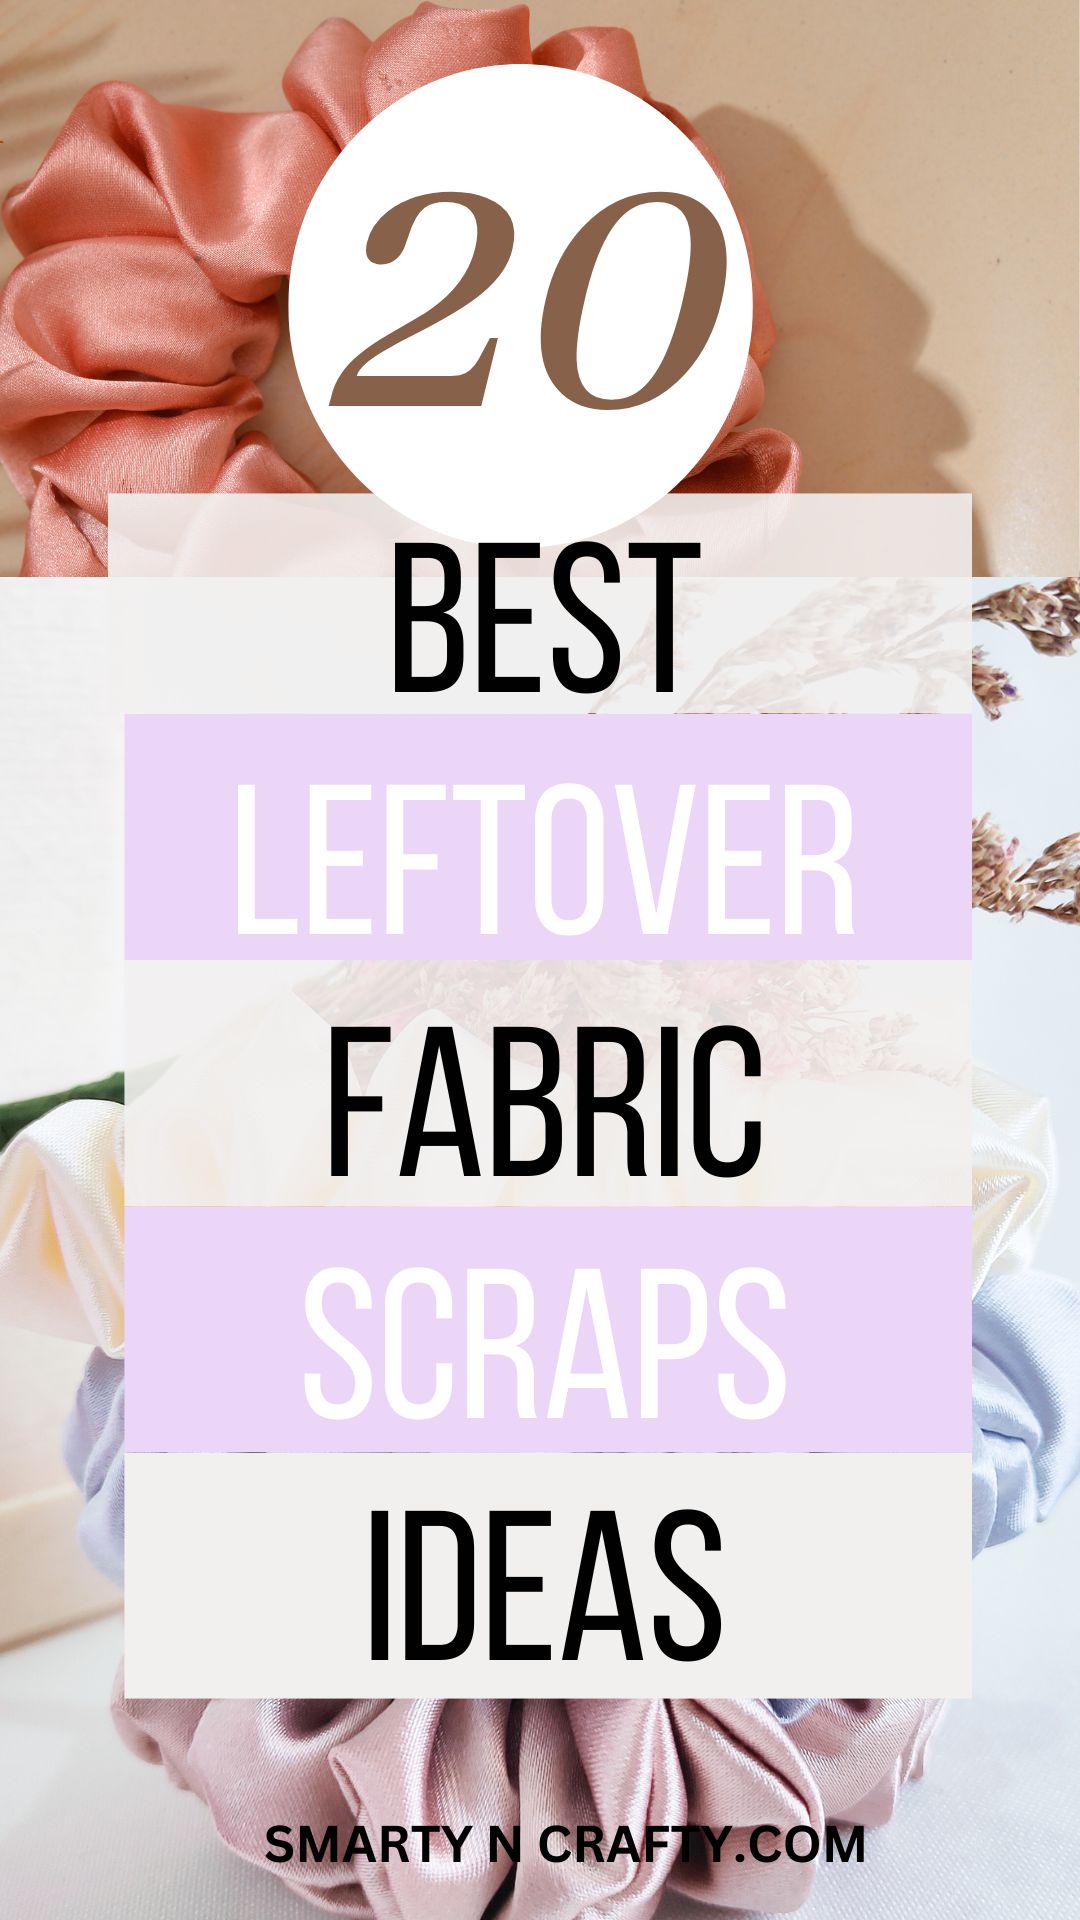 leftover fabric scrap ideas